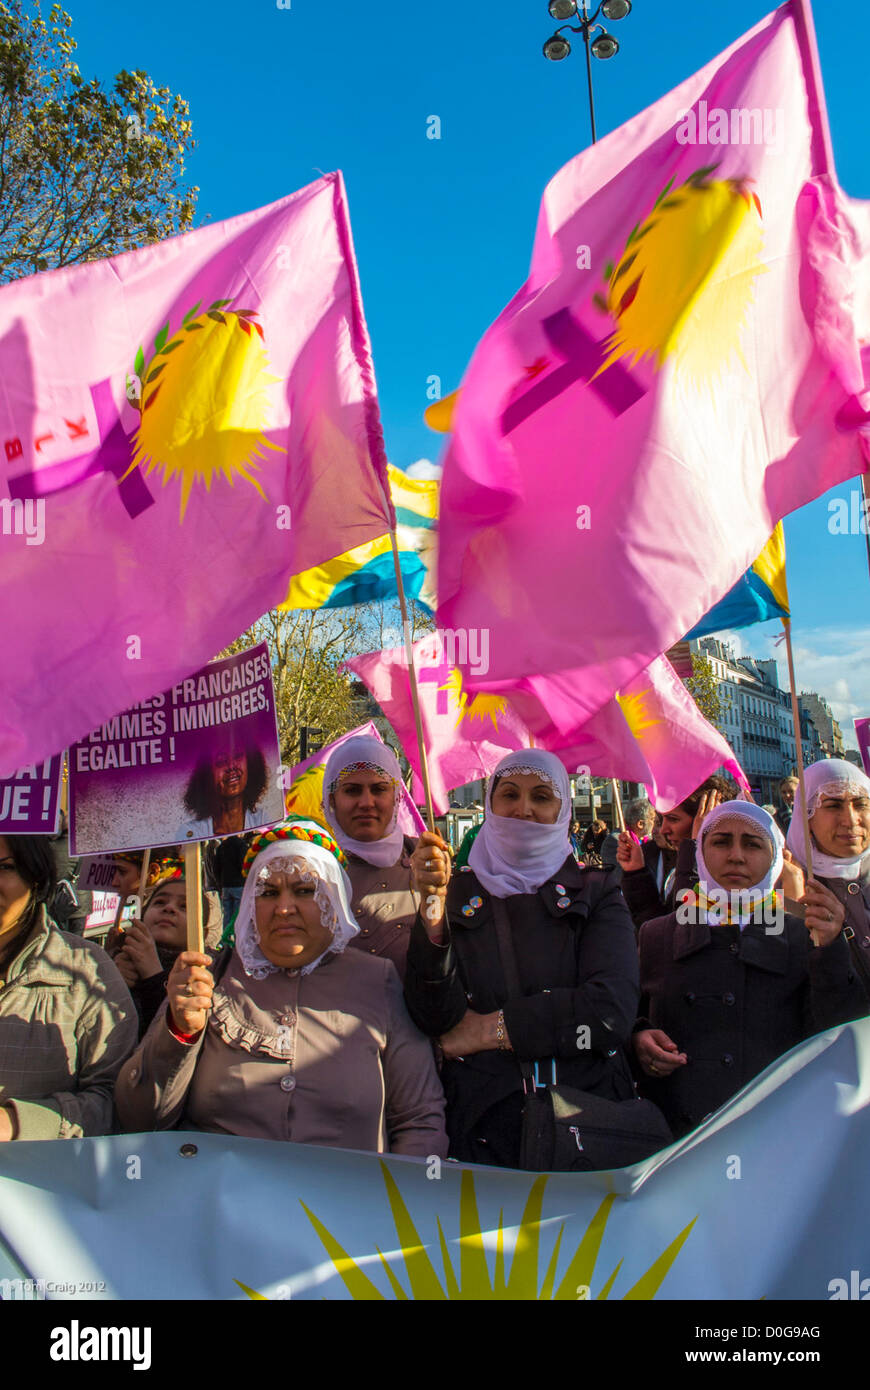 Paris, France, les différents groupes féministes ont organisé une marche contre la violence à l'égard des femmes, la Journée internationale des droits des femmes Banque D'Images